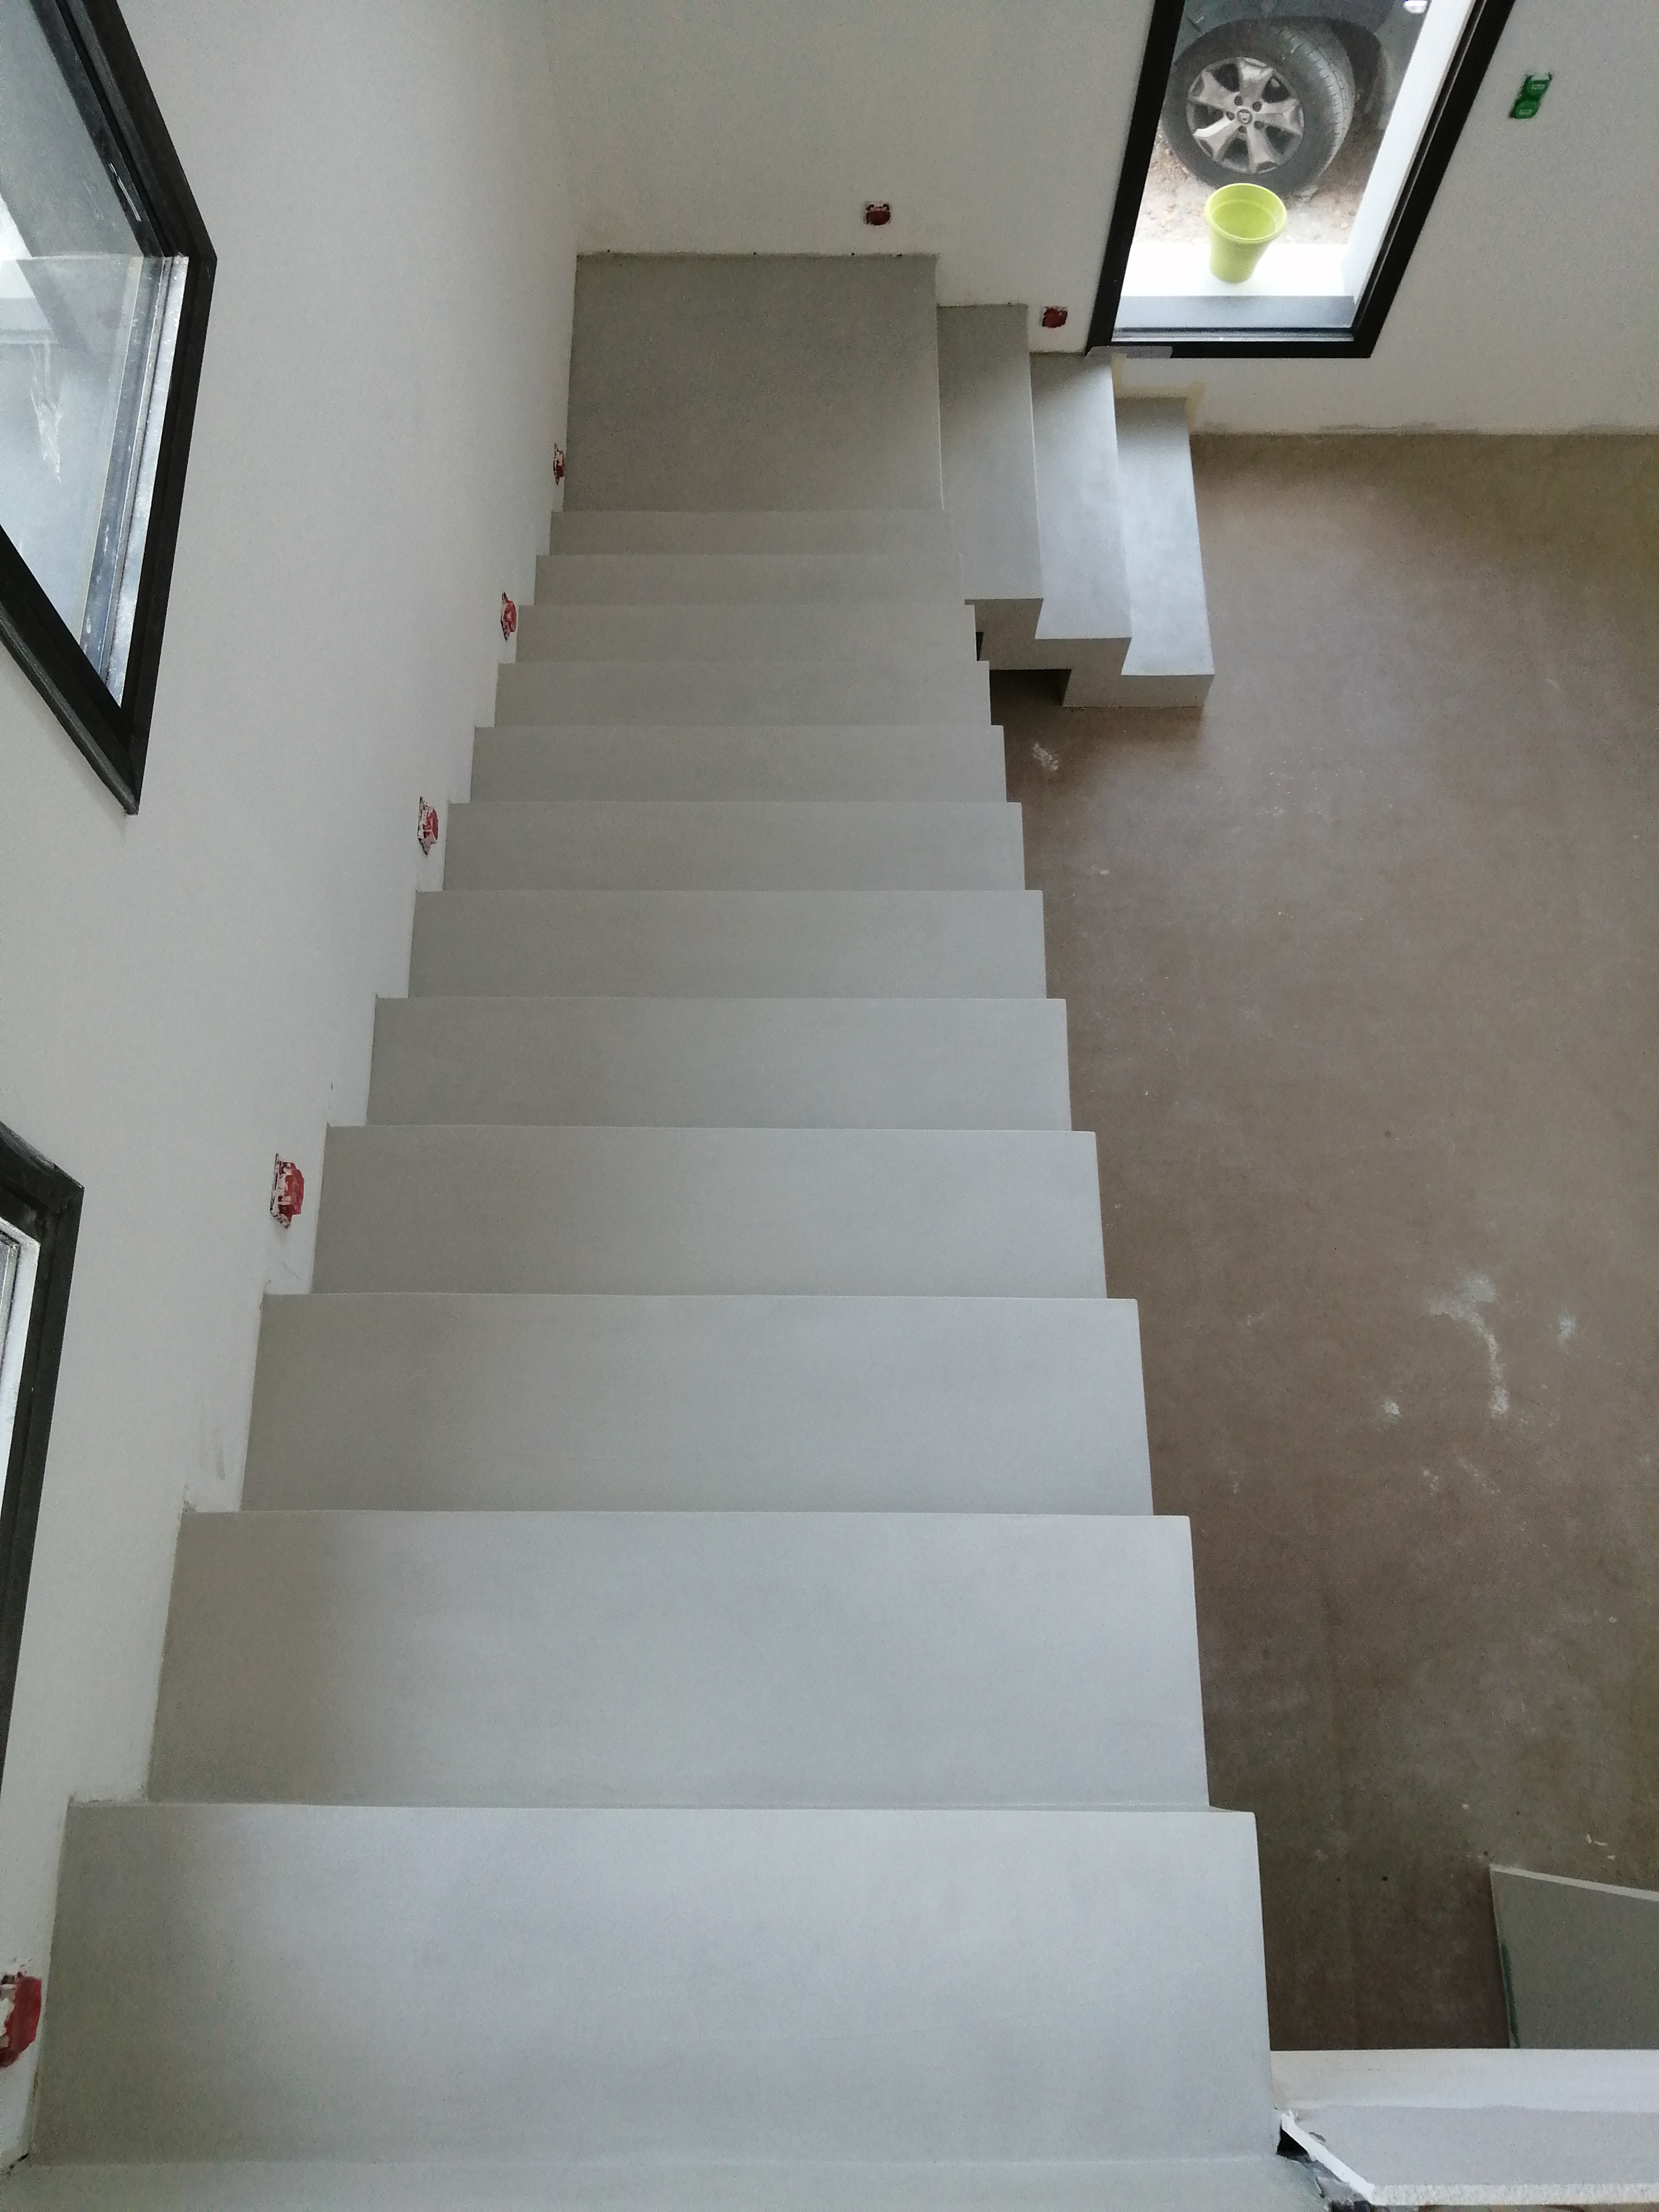 béton ciré d'un escalier à crémaillère couleur poivre blanc à Orange entre Valence et Avignon dans le Vaucluse pour un constructeur par la société Scal'in